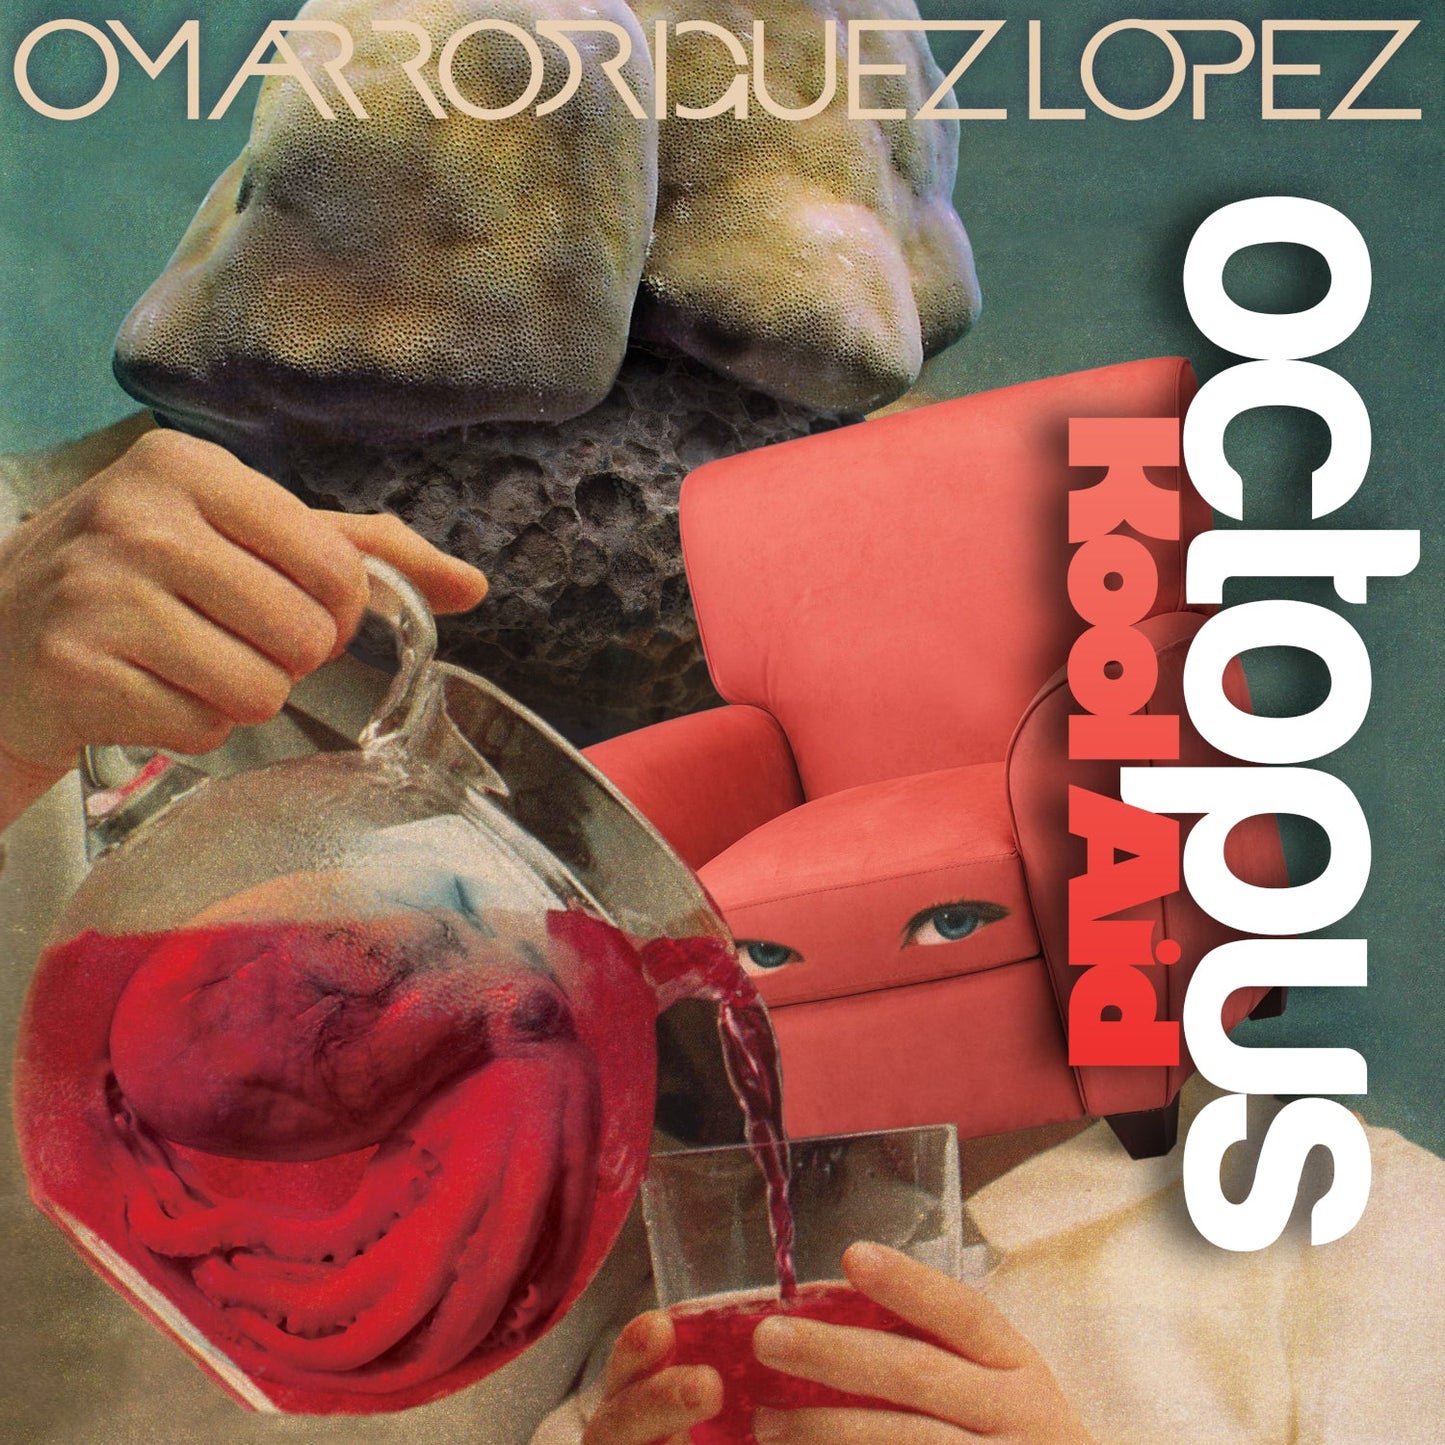 Omar Rodríguez-López - Octopus Kool Aid - LP